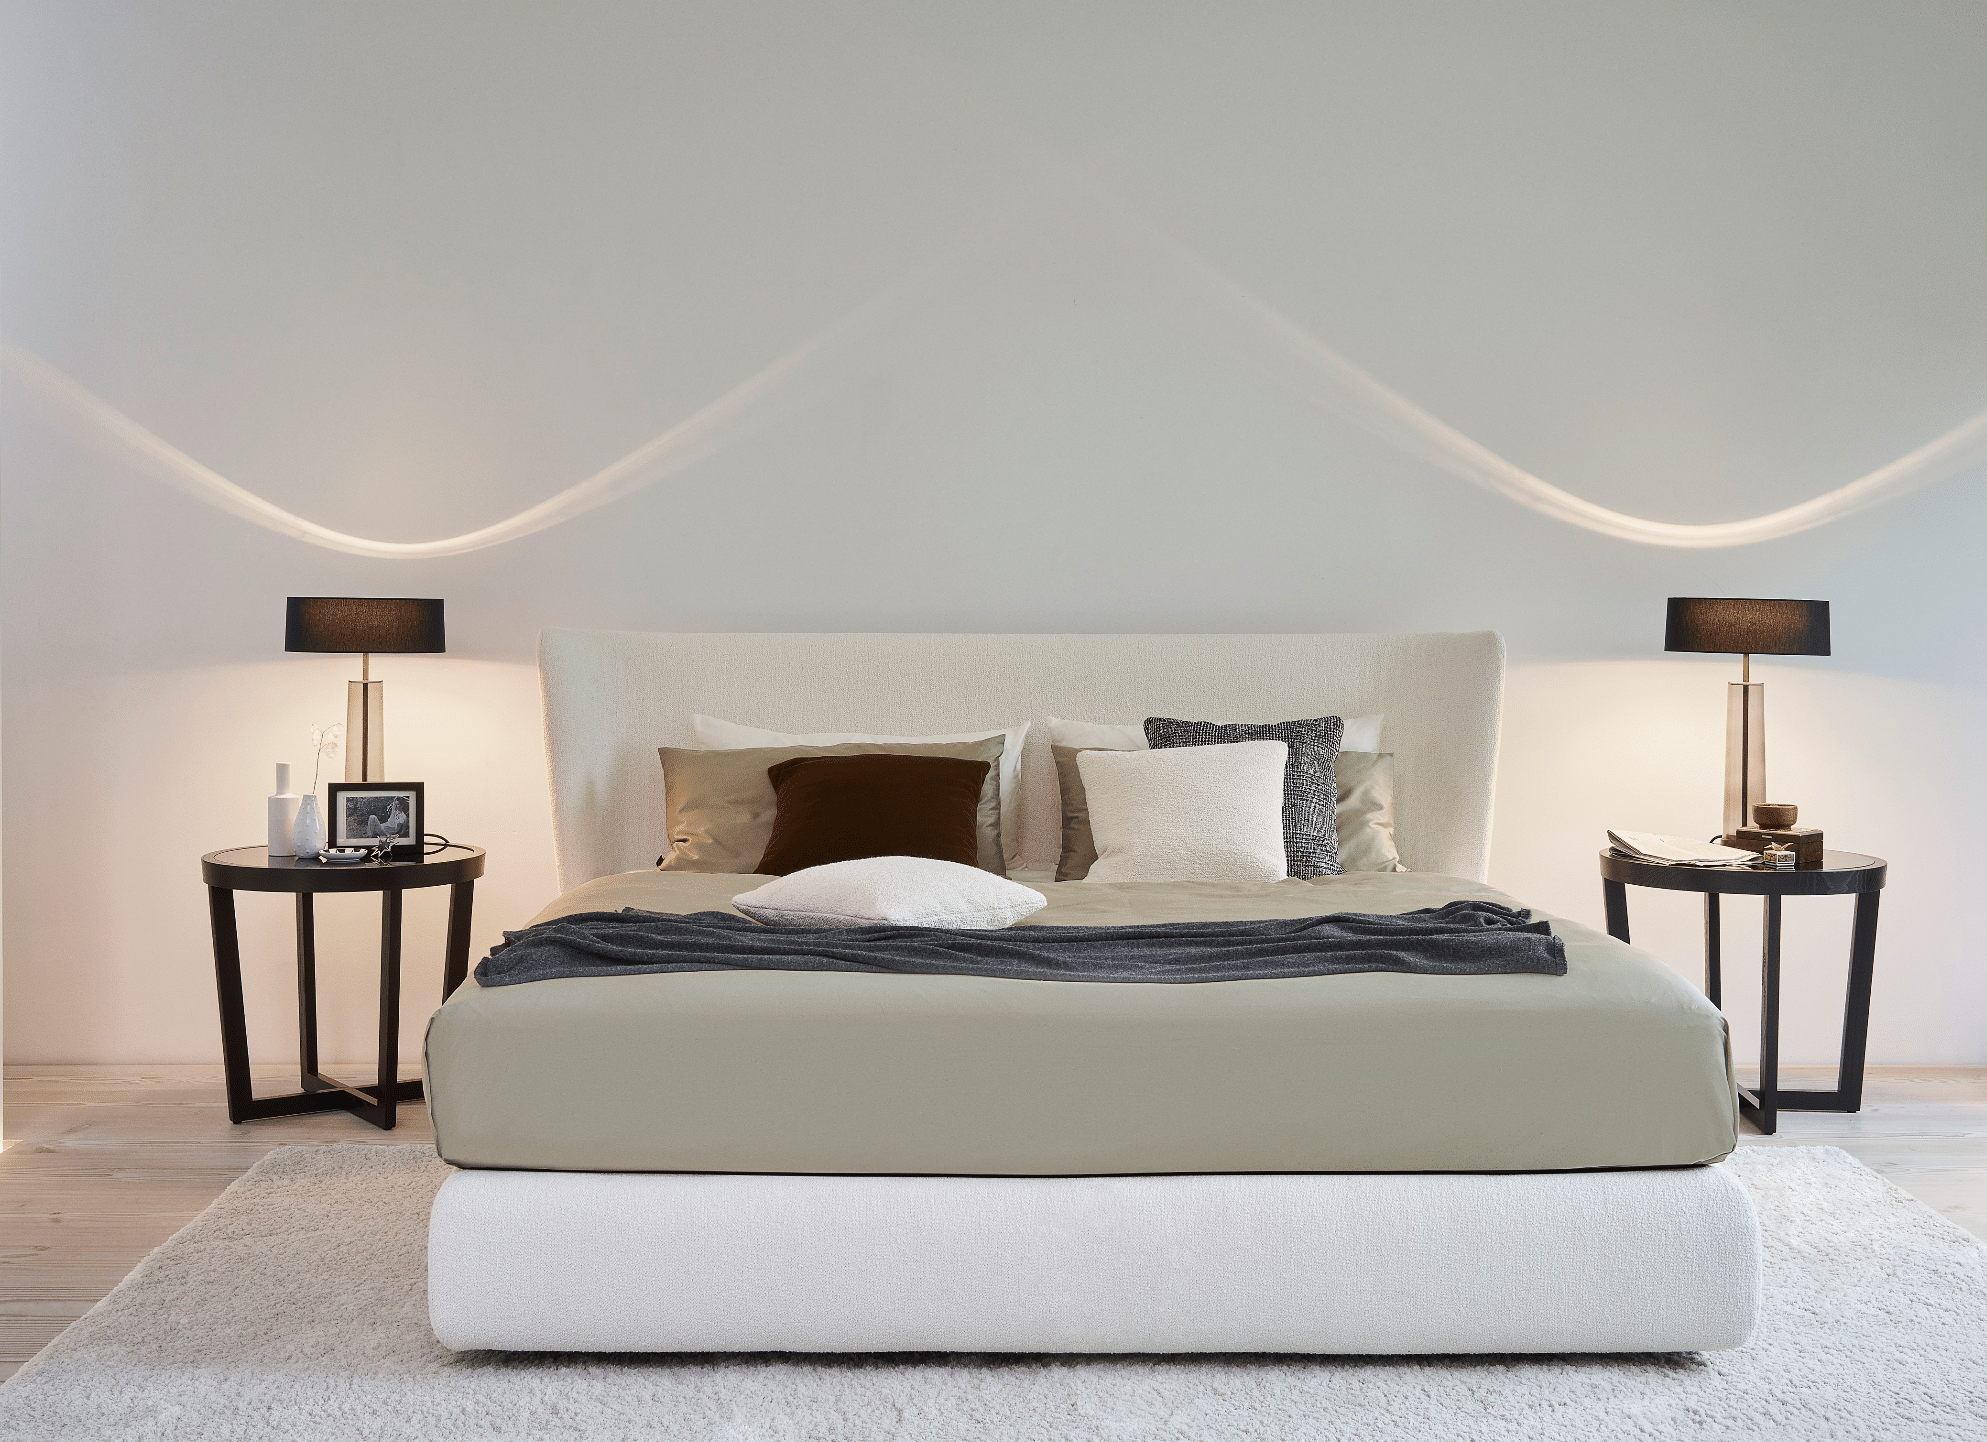 Grill & Ronacher zeigt ein Schlafzimmer mit Doppelbett in weiß, zwei Nachttischen, zwei Lampen und weißem Teppich von Bielefelder Werkstätten.